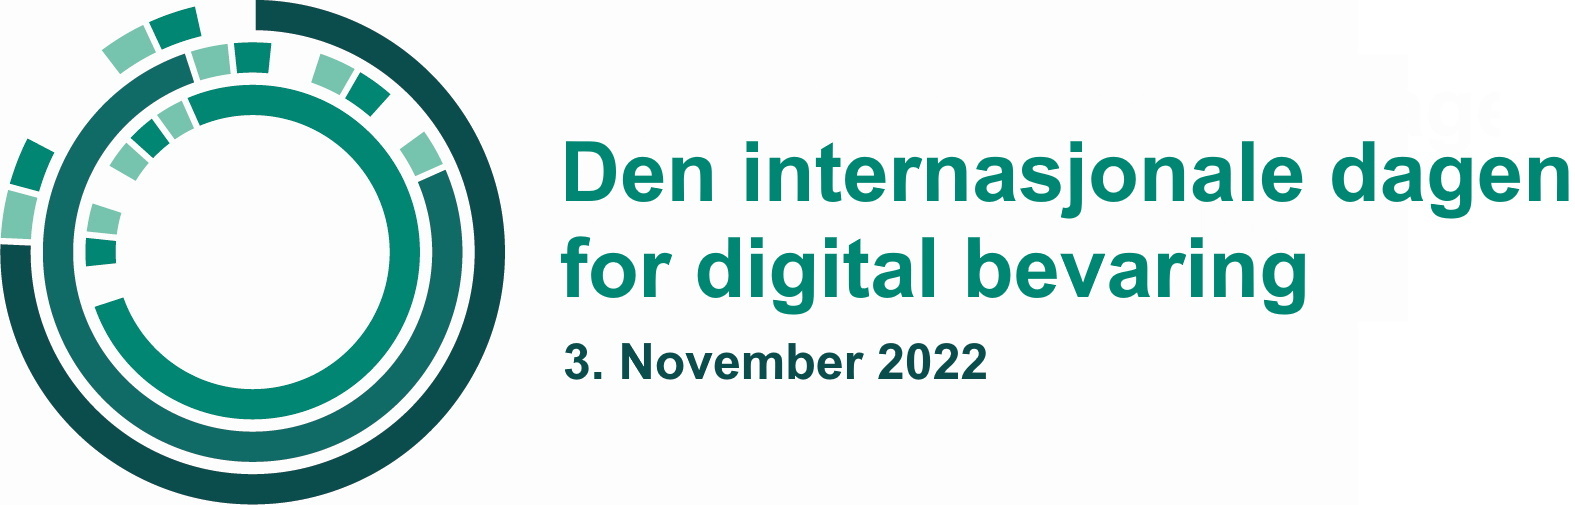 Den internasjonale dagen for digital bevaring.jpg